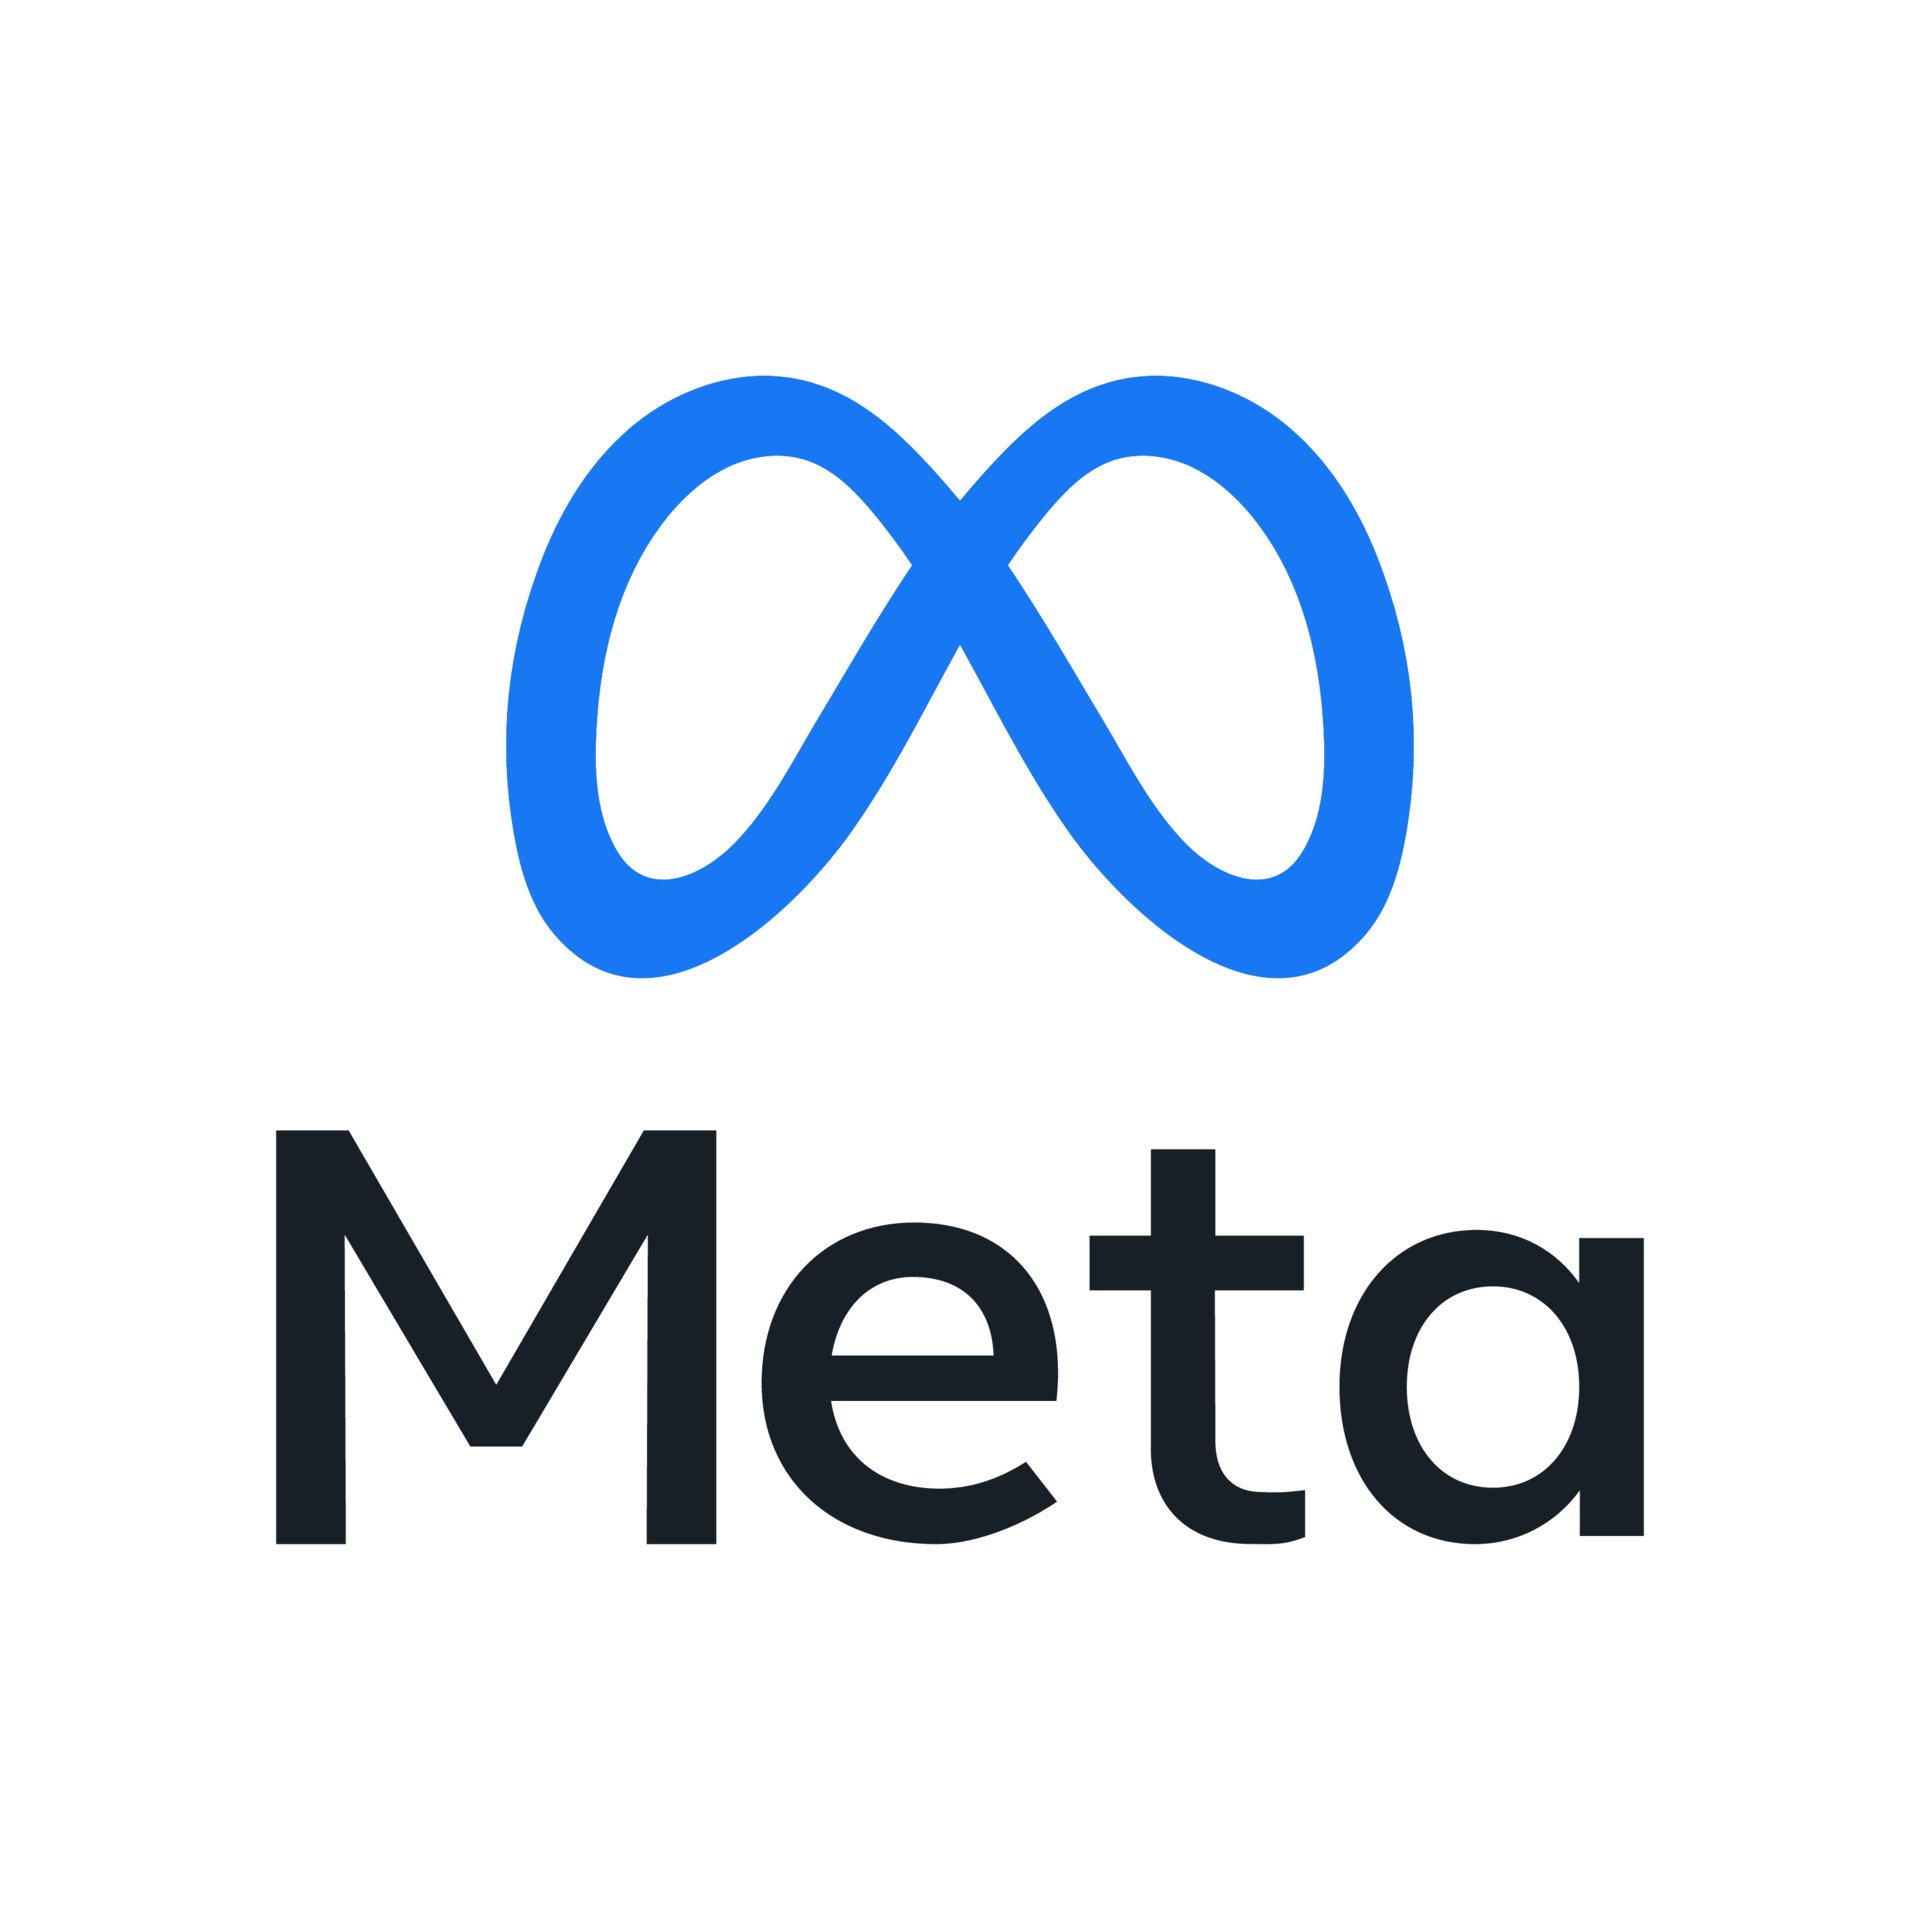 meta-logo-meta-by-facebook-icon-editorial-logo-for-social-media-free-vector.jpg